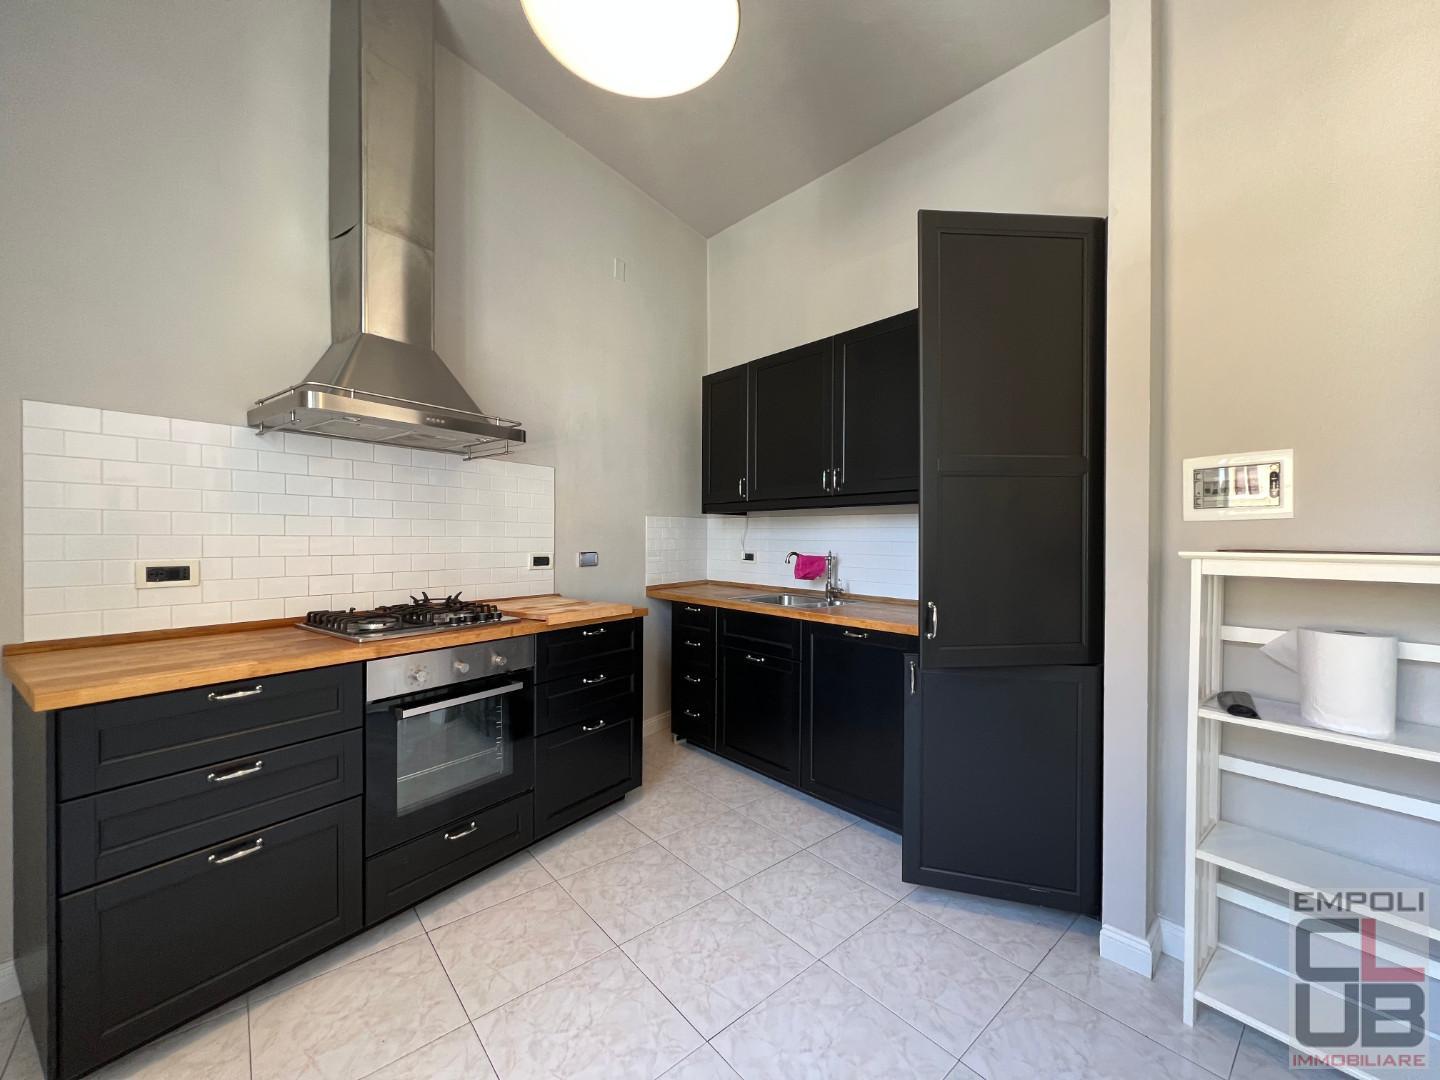 Appartamento in affitto a Empoli, 4 locali, prezzo € 1.500 | CambioCasa.it